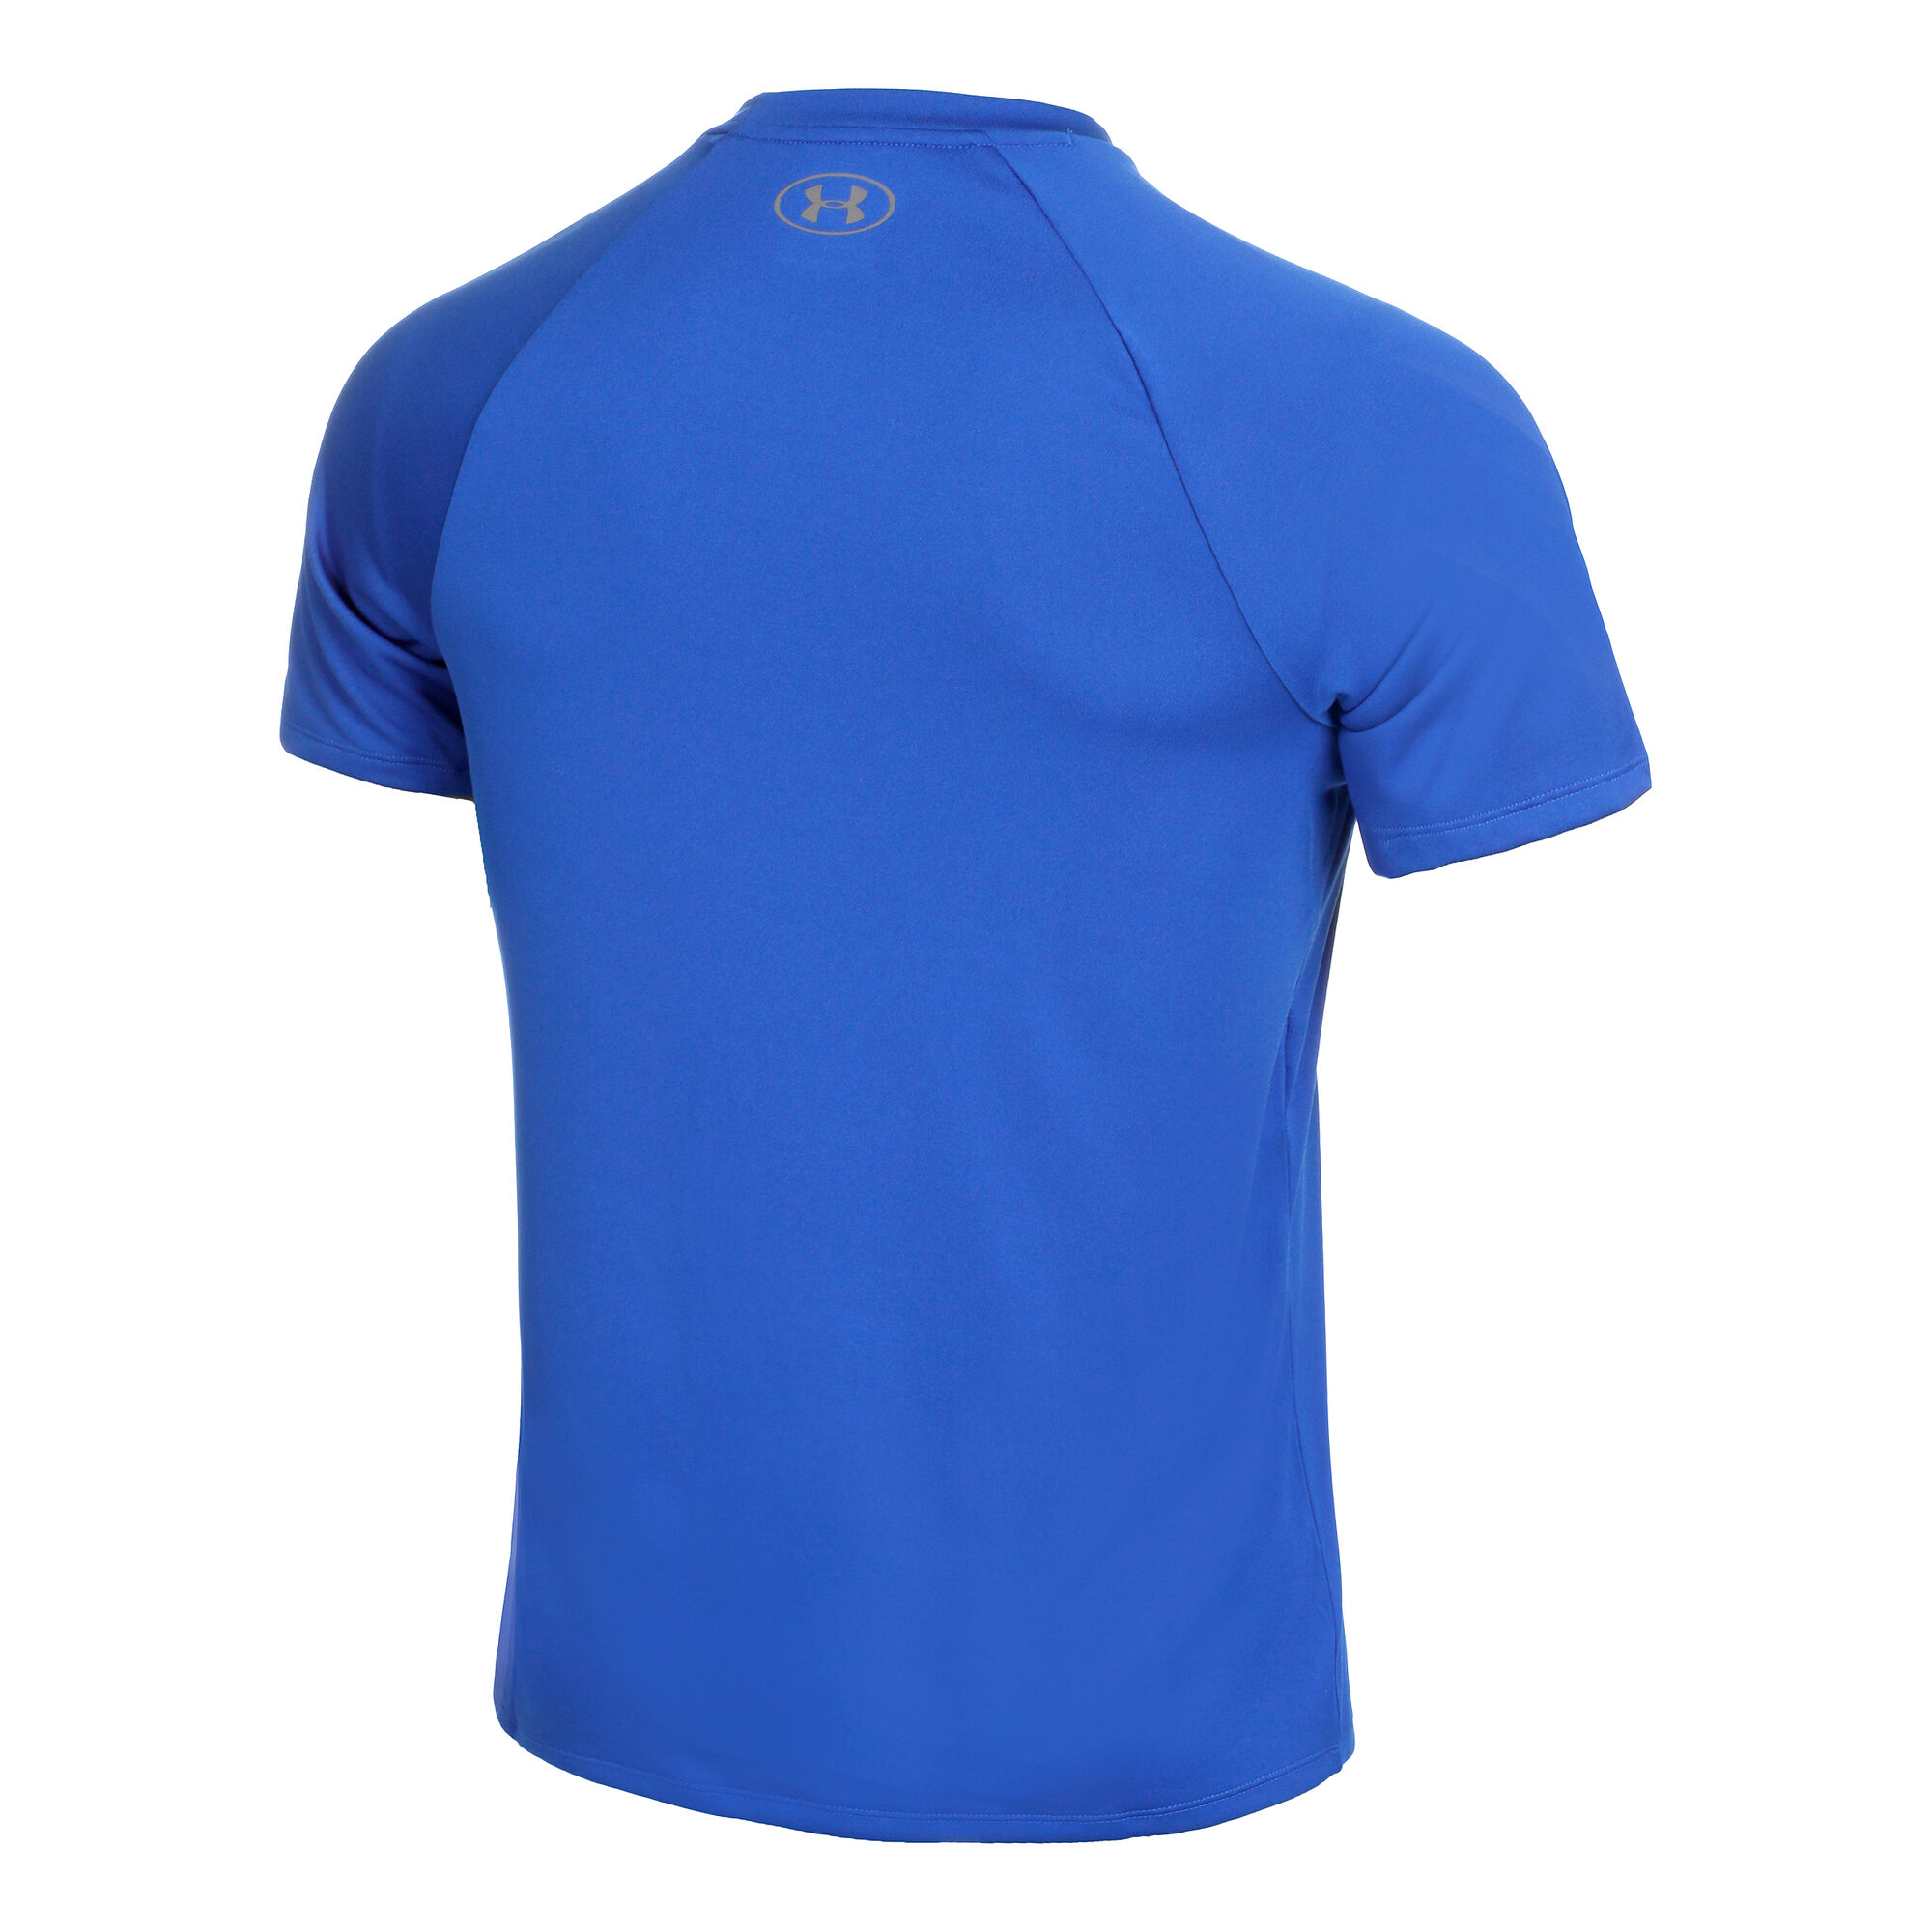 buy Under Armour Tech 2.0 T-Shirt Men - Dark Blue, Blue online | Tennis ...